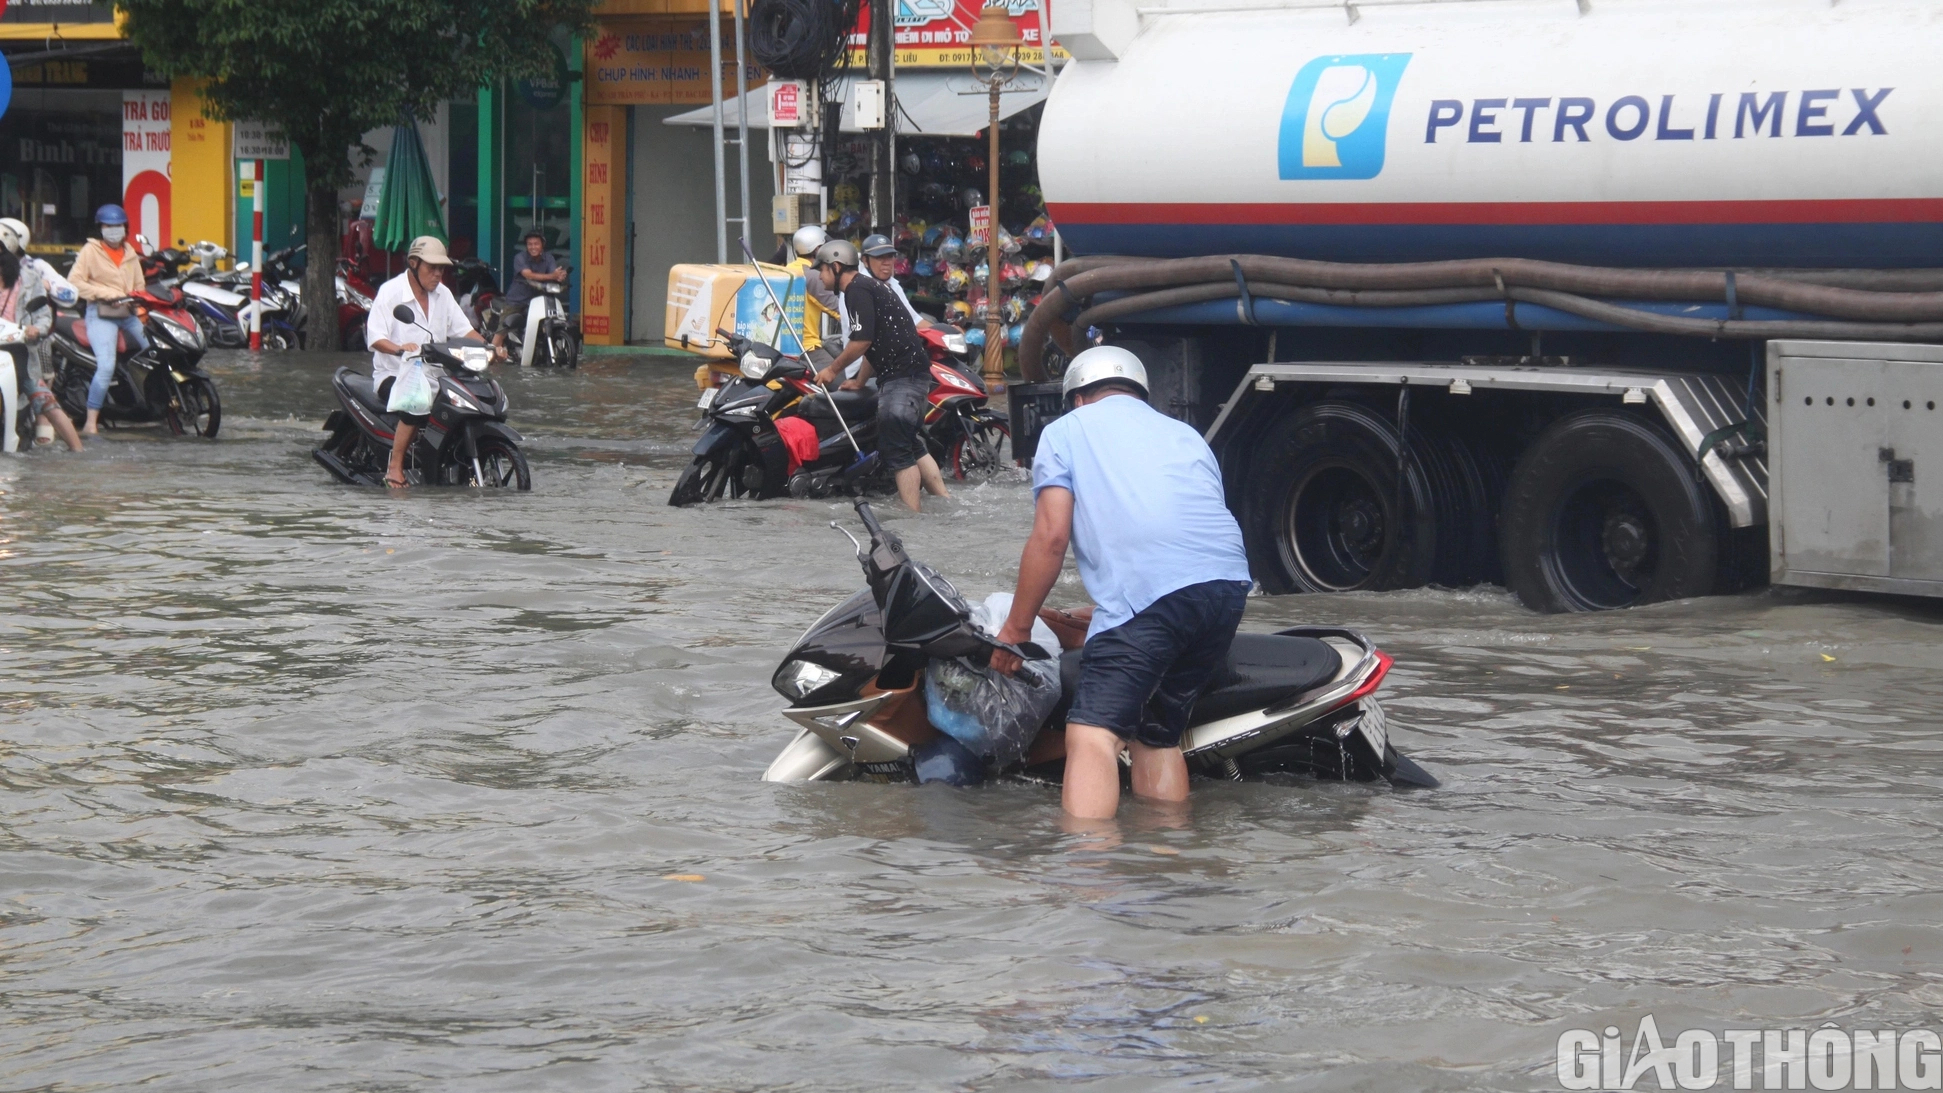 Người dân Bạc Liêu bì bõm dẫn xe lội nước sau cơn mưa lớn kéo dài - Ảnh 3.